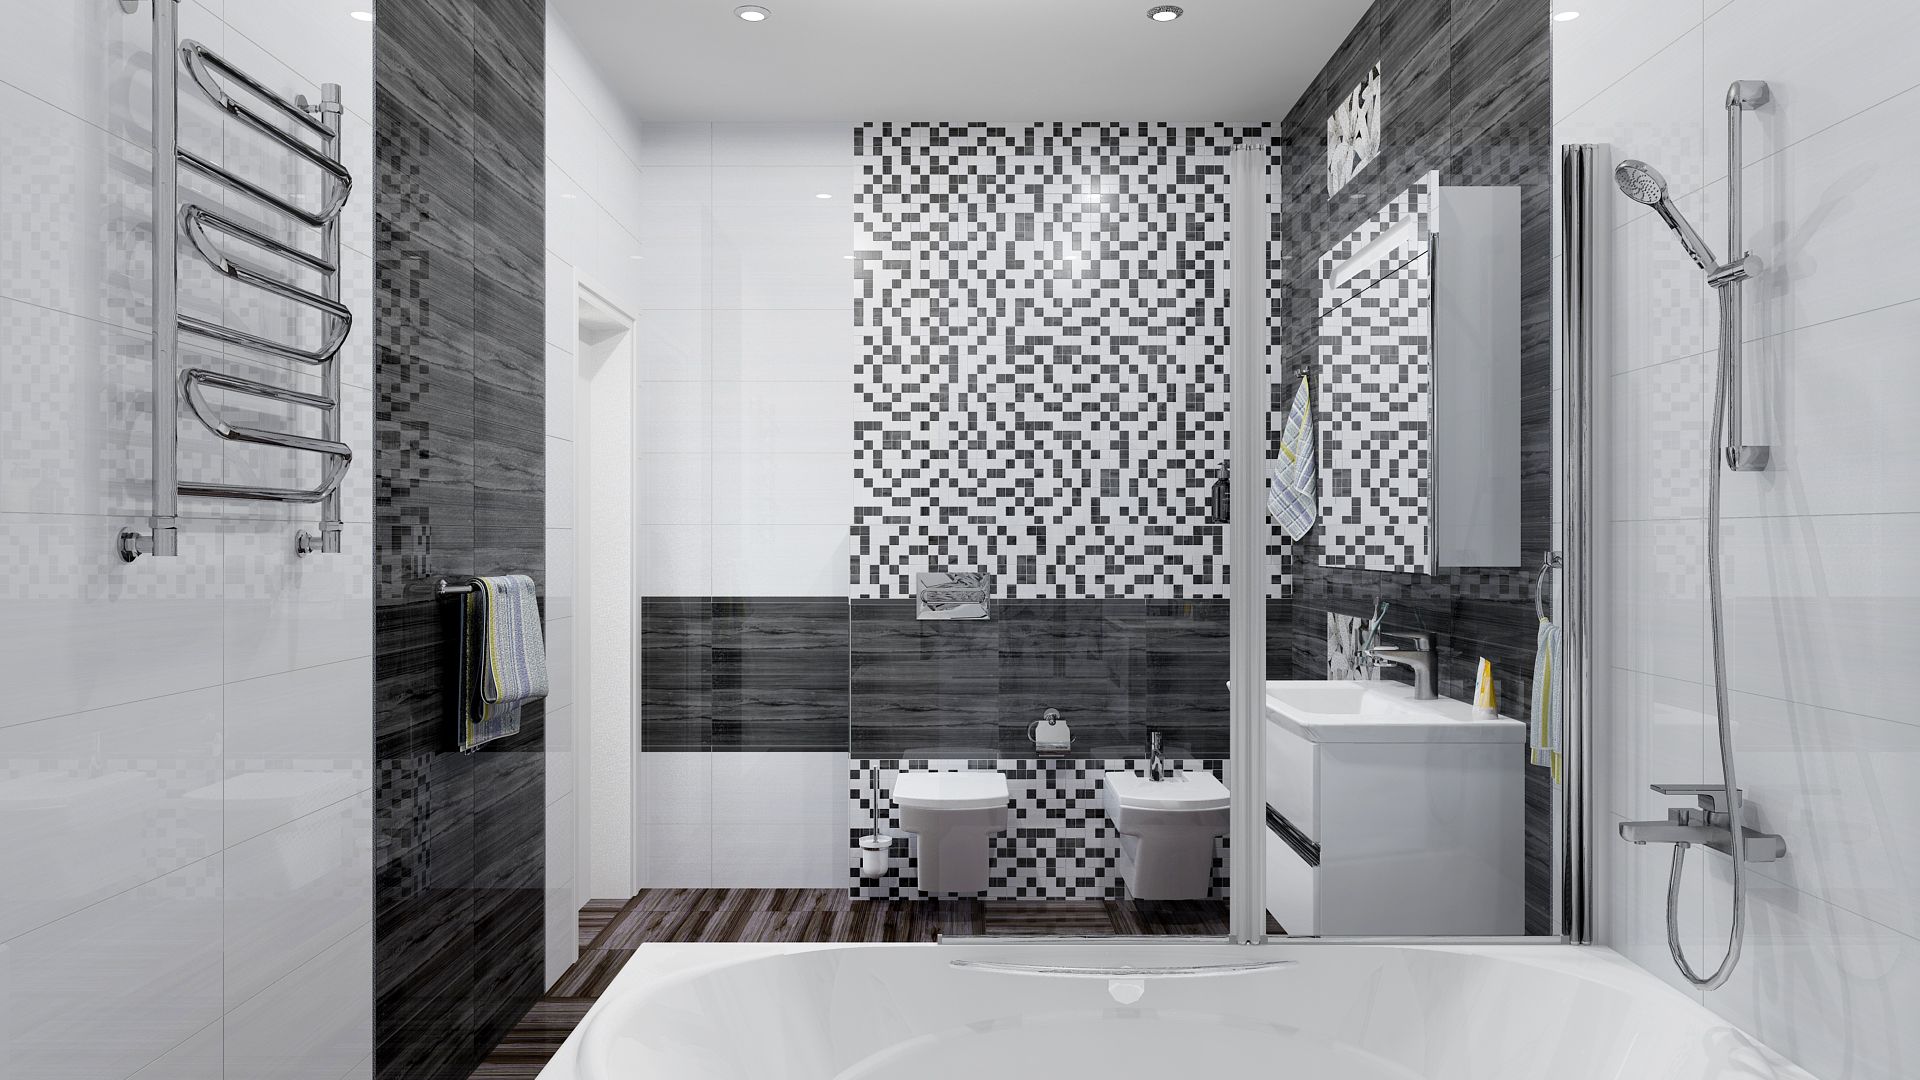  плитка в ванной комнате фото: глянцевый кафель на пол и матовые .